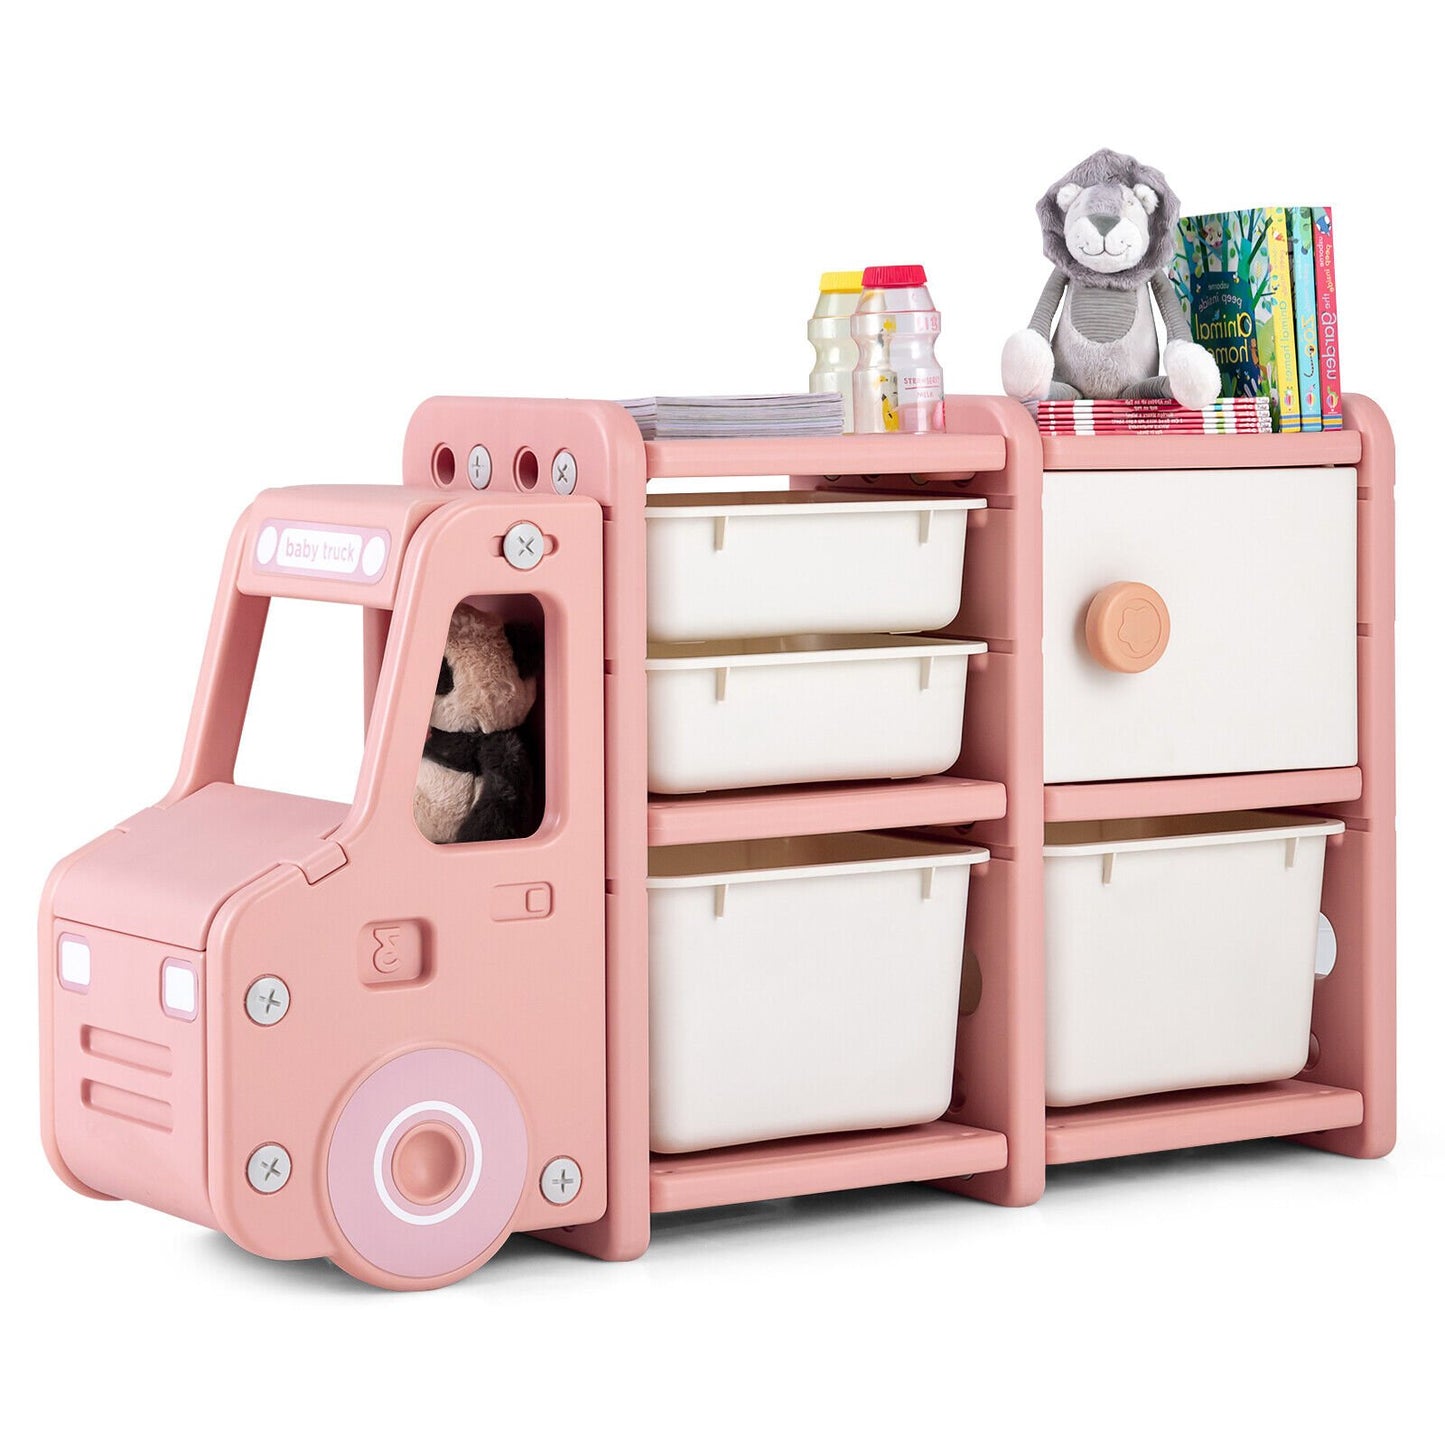 Toddler Truck Storage Organizer with Plastic Bins, Pink